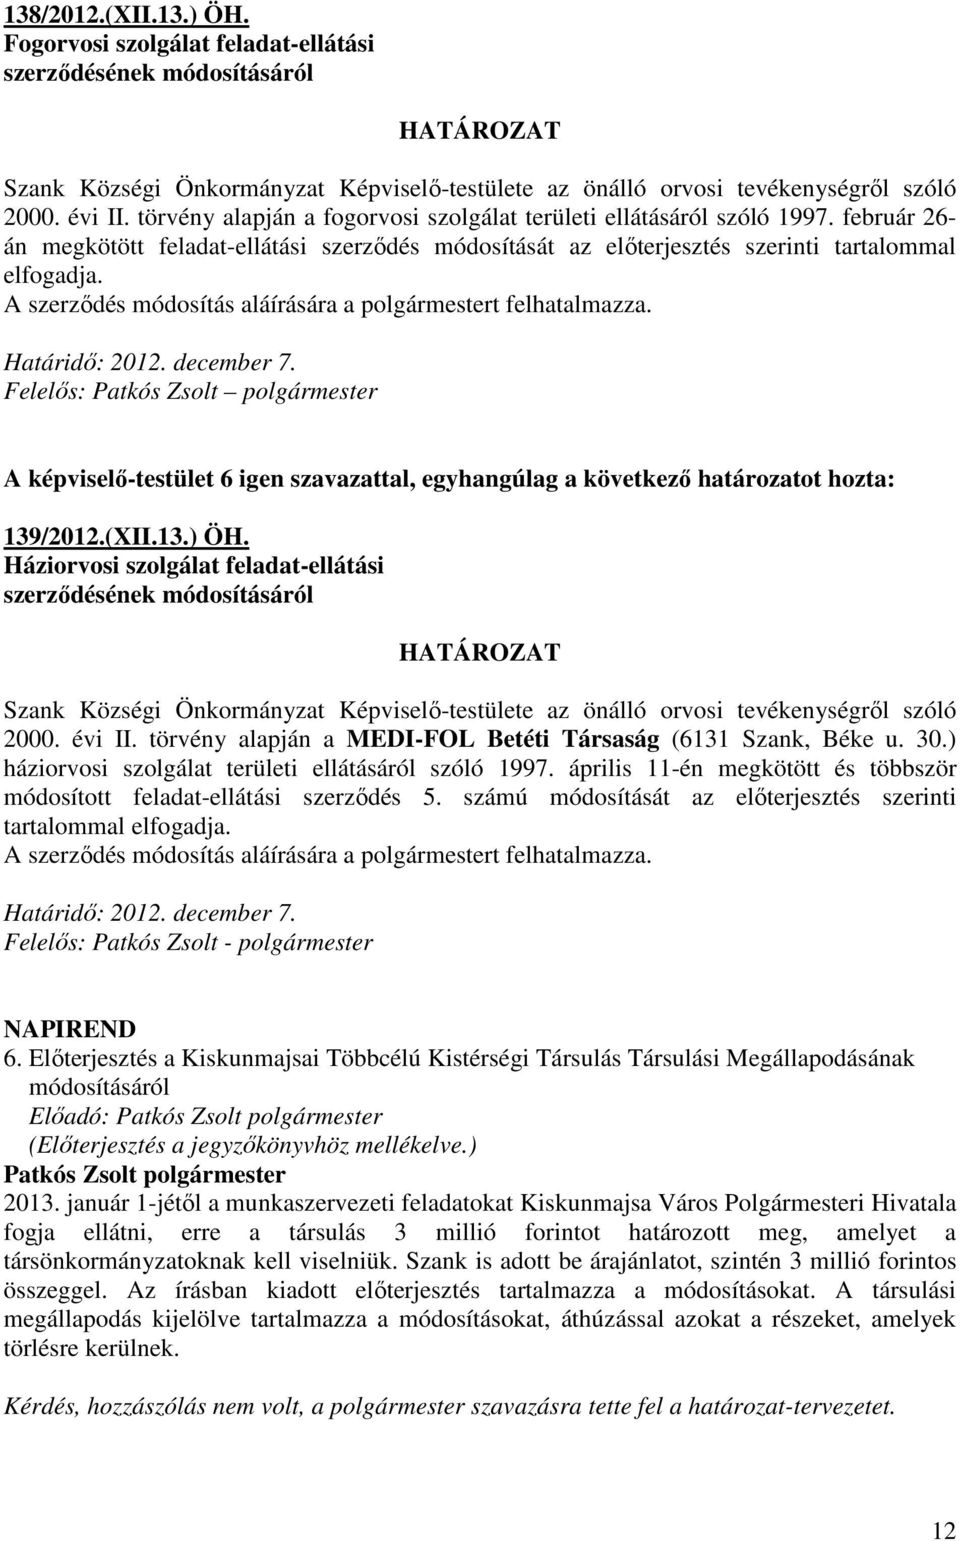 A szerzıdés módosítás aláírására a polgármestert felhatalmazza. Határidı: 2012. december 7. Felelıs: Patkós Zsolt polgármester 139/2012.(XII.13.) ÖH.